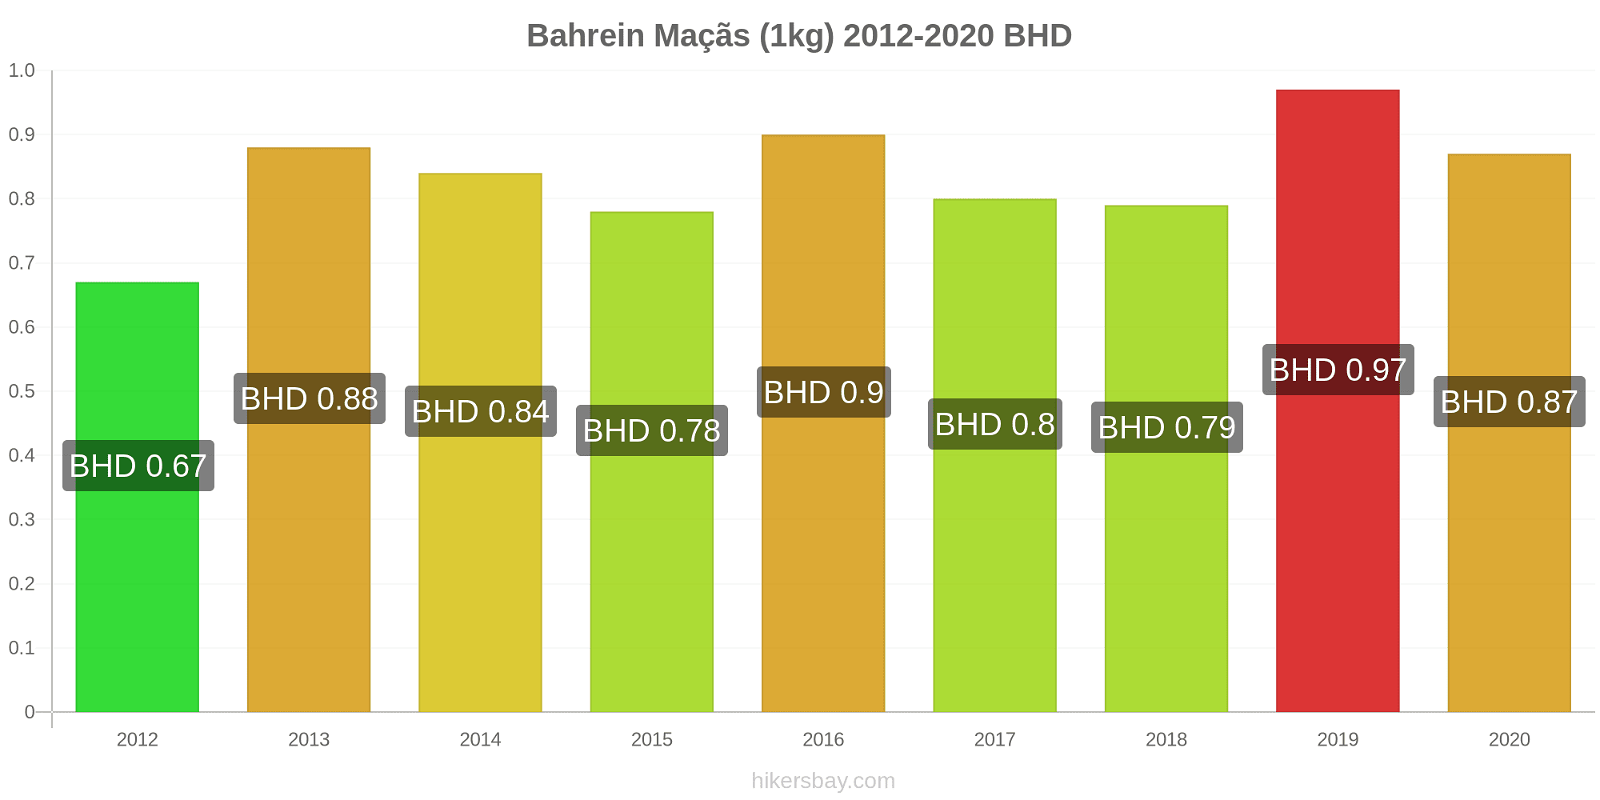 Bahrein variação de preço Maçãs (1kg) hikersbay.com